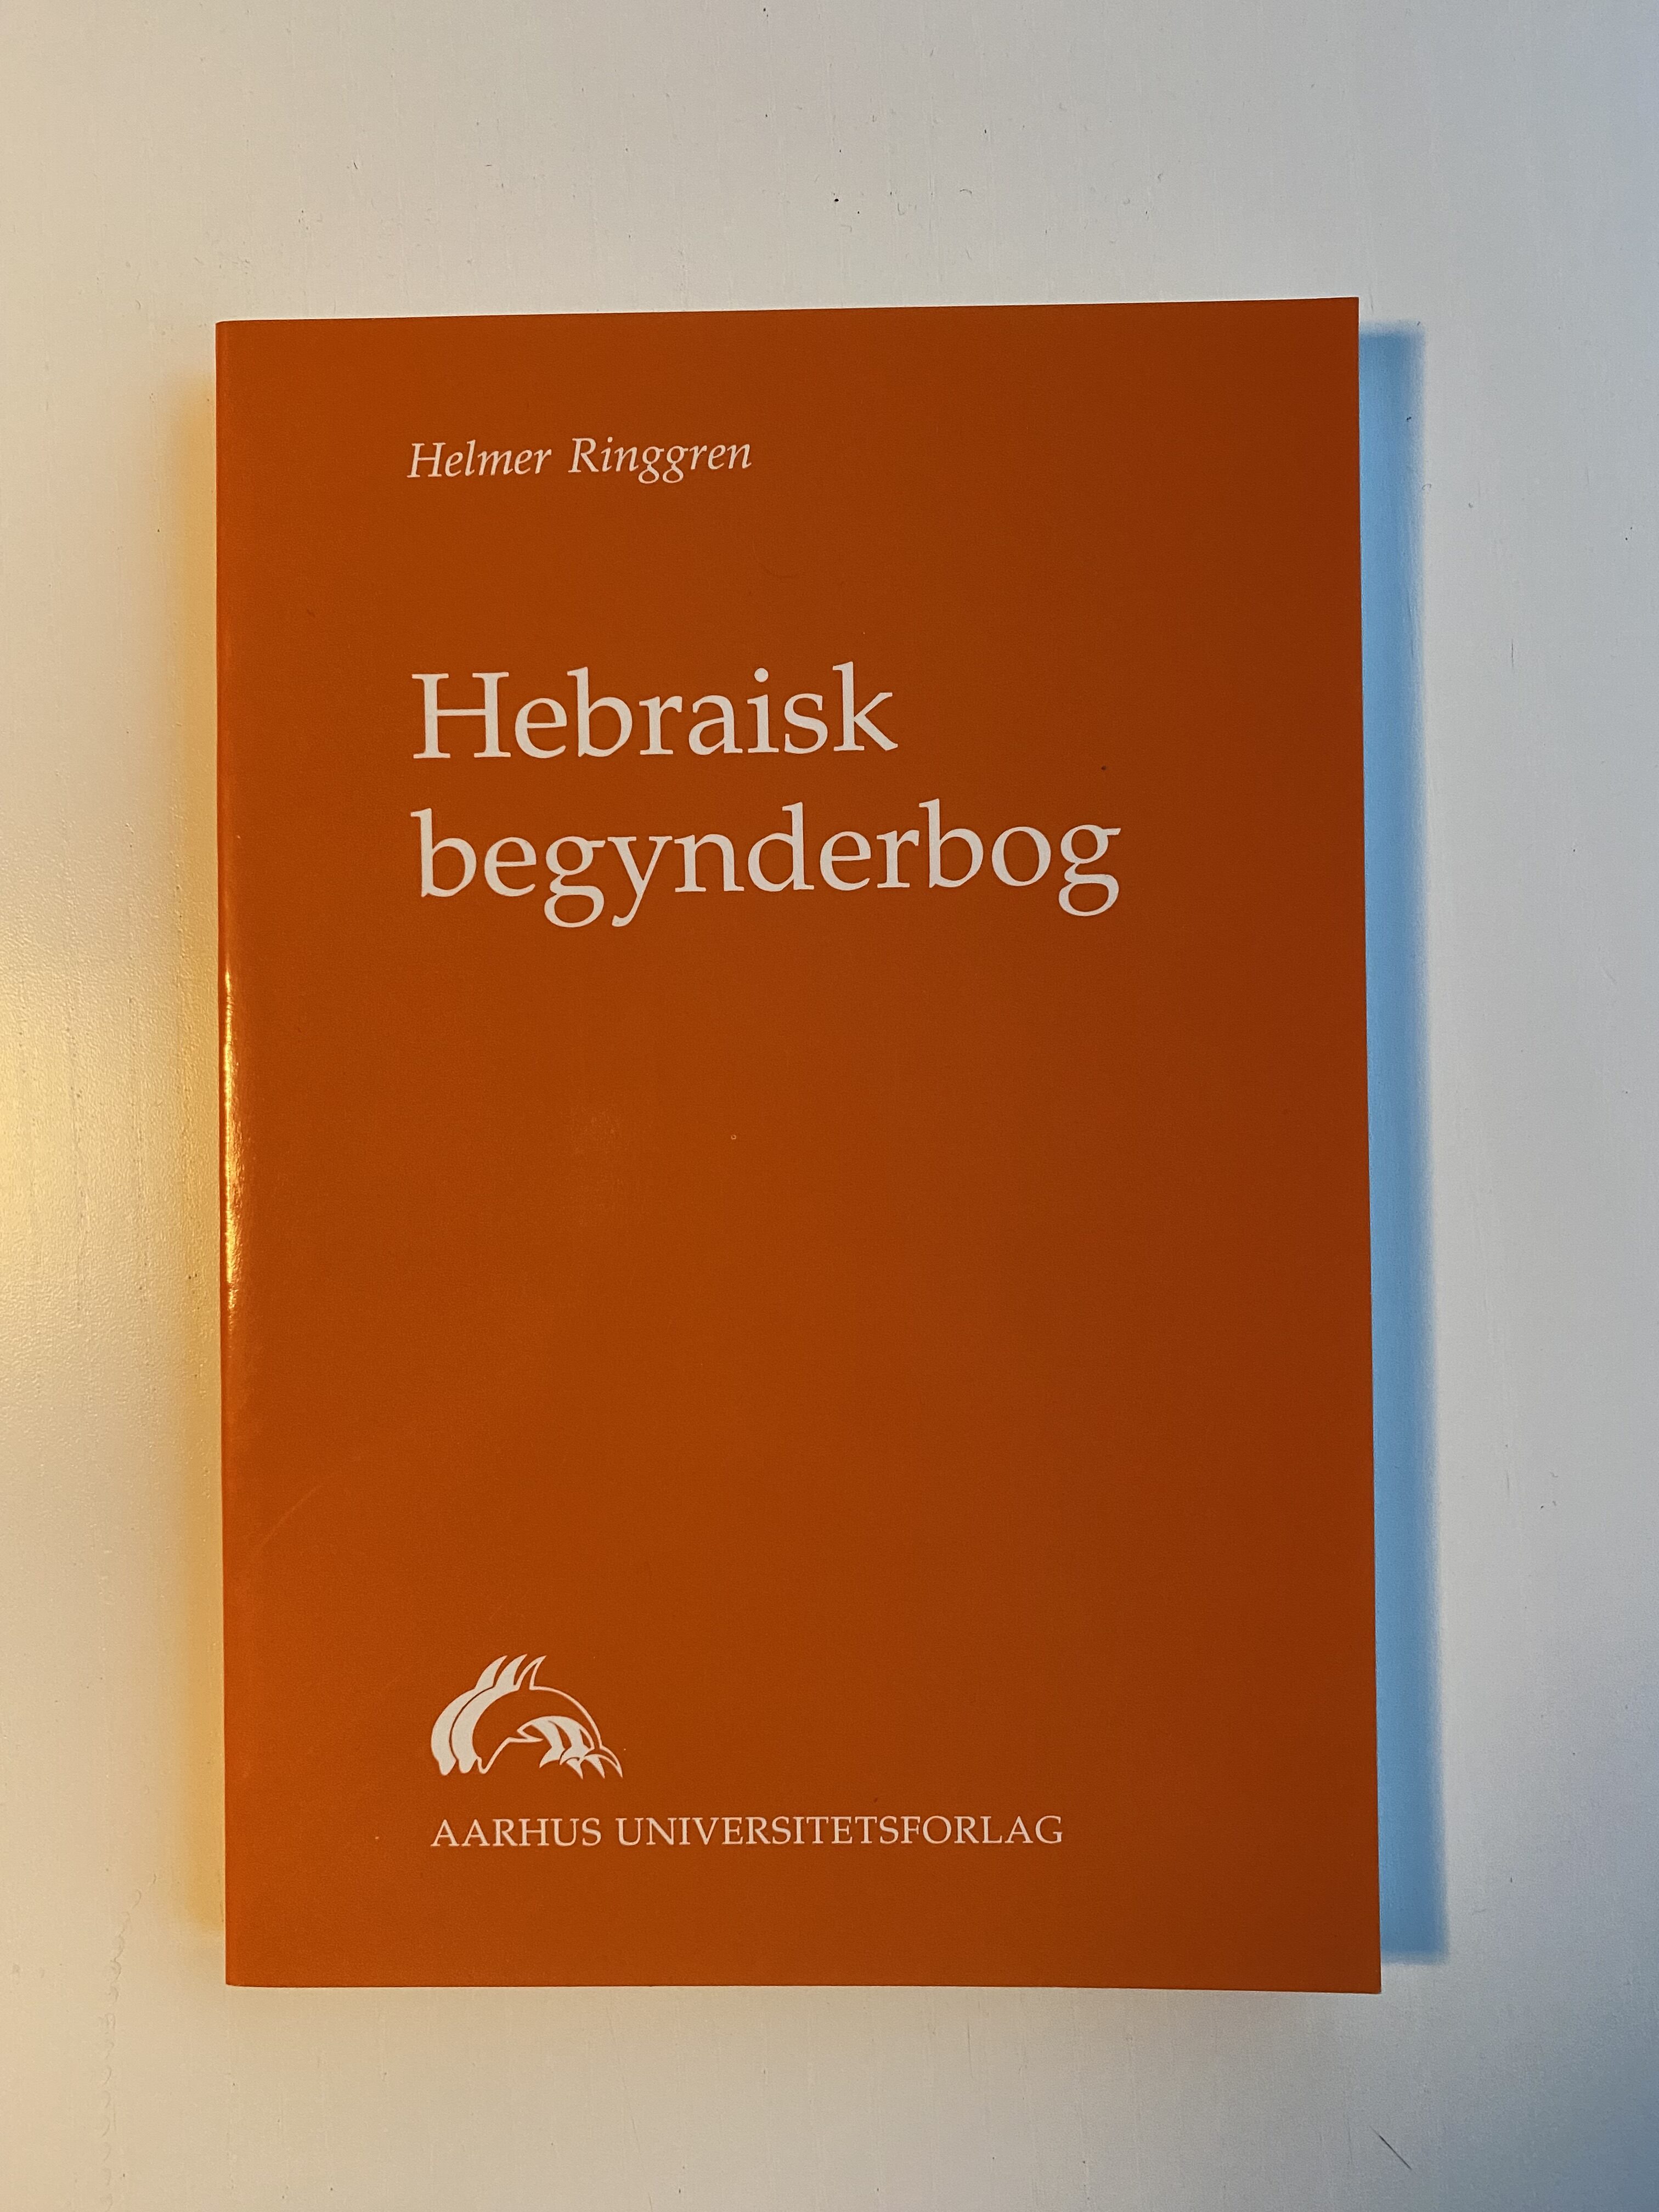 Køb "Hebraisk begynderbog 1996" (forside)